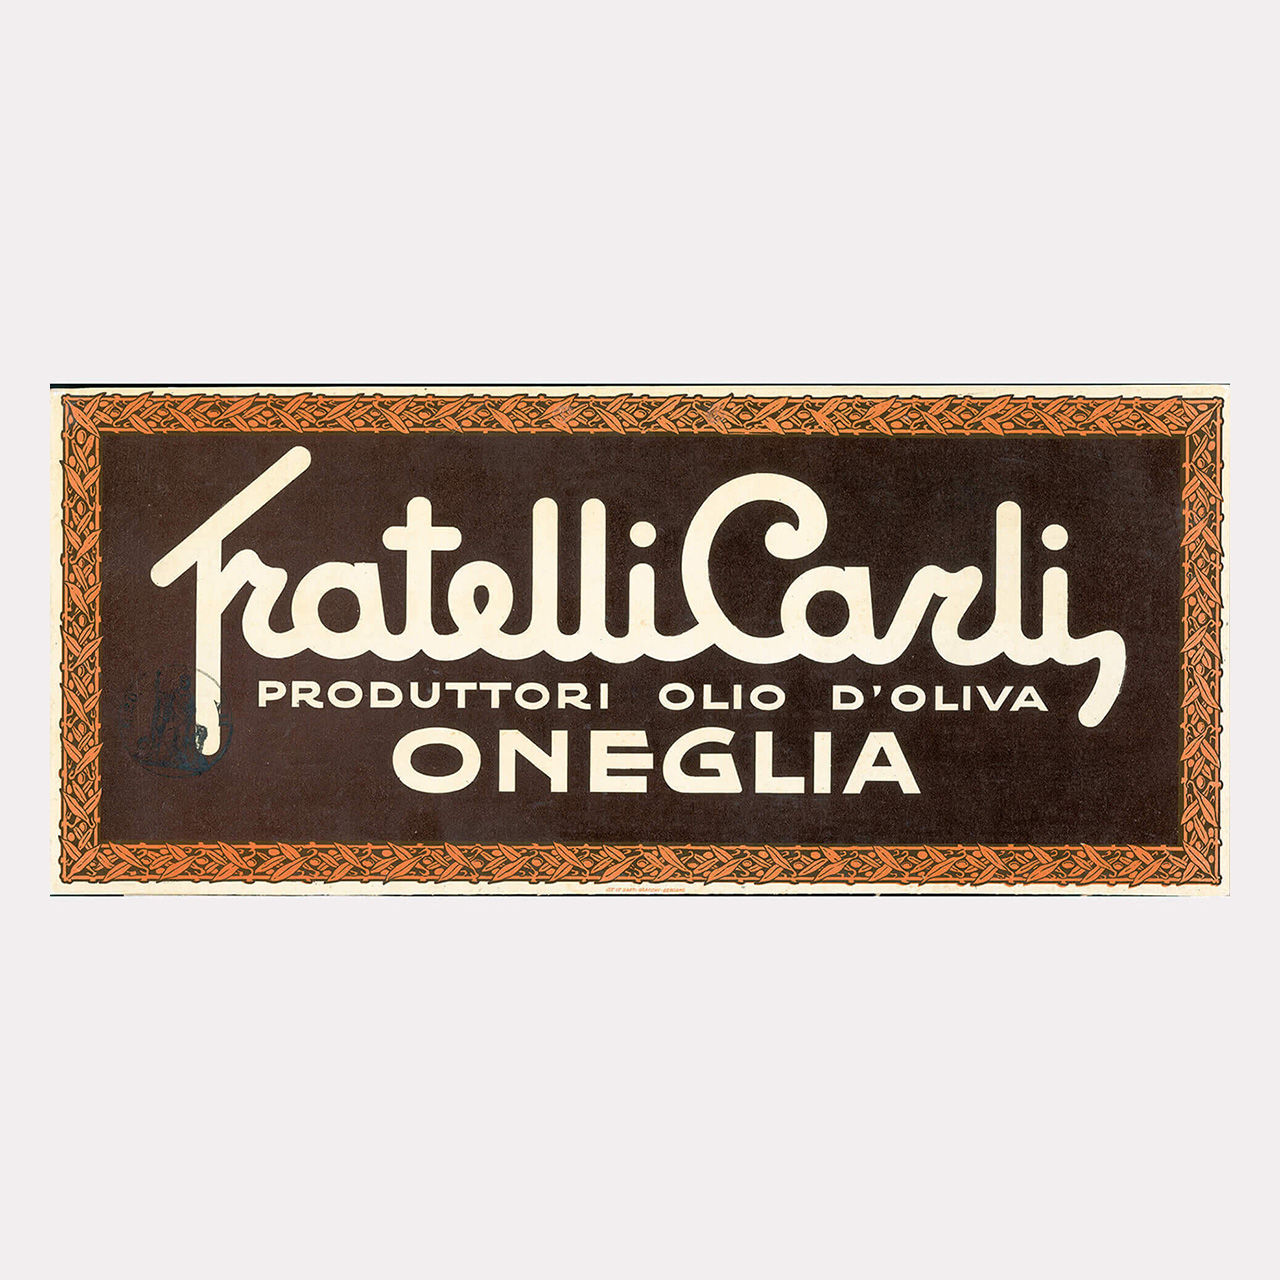 Das erste Logo von Fratelli Carli 